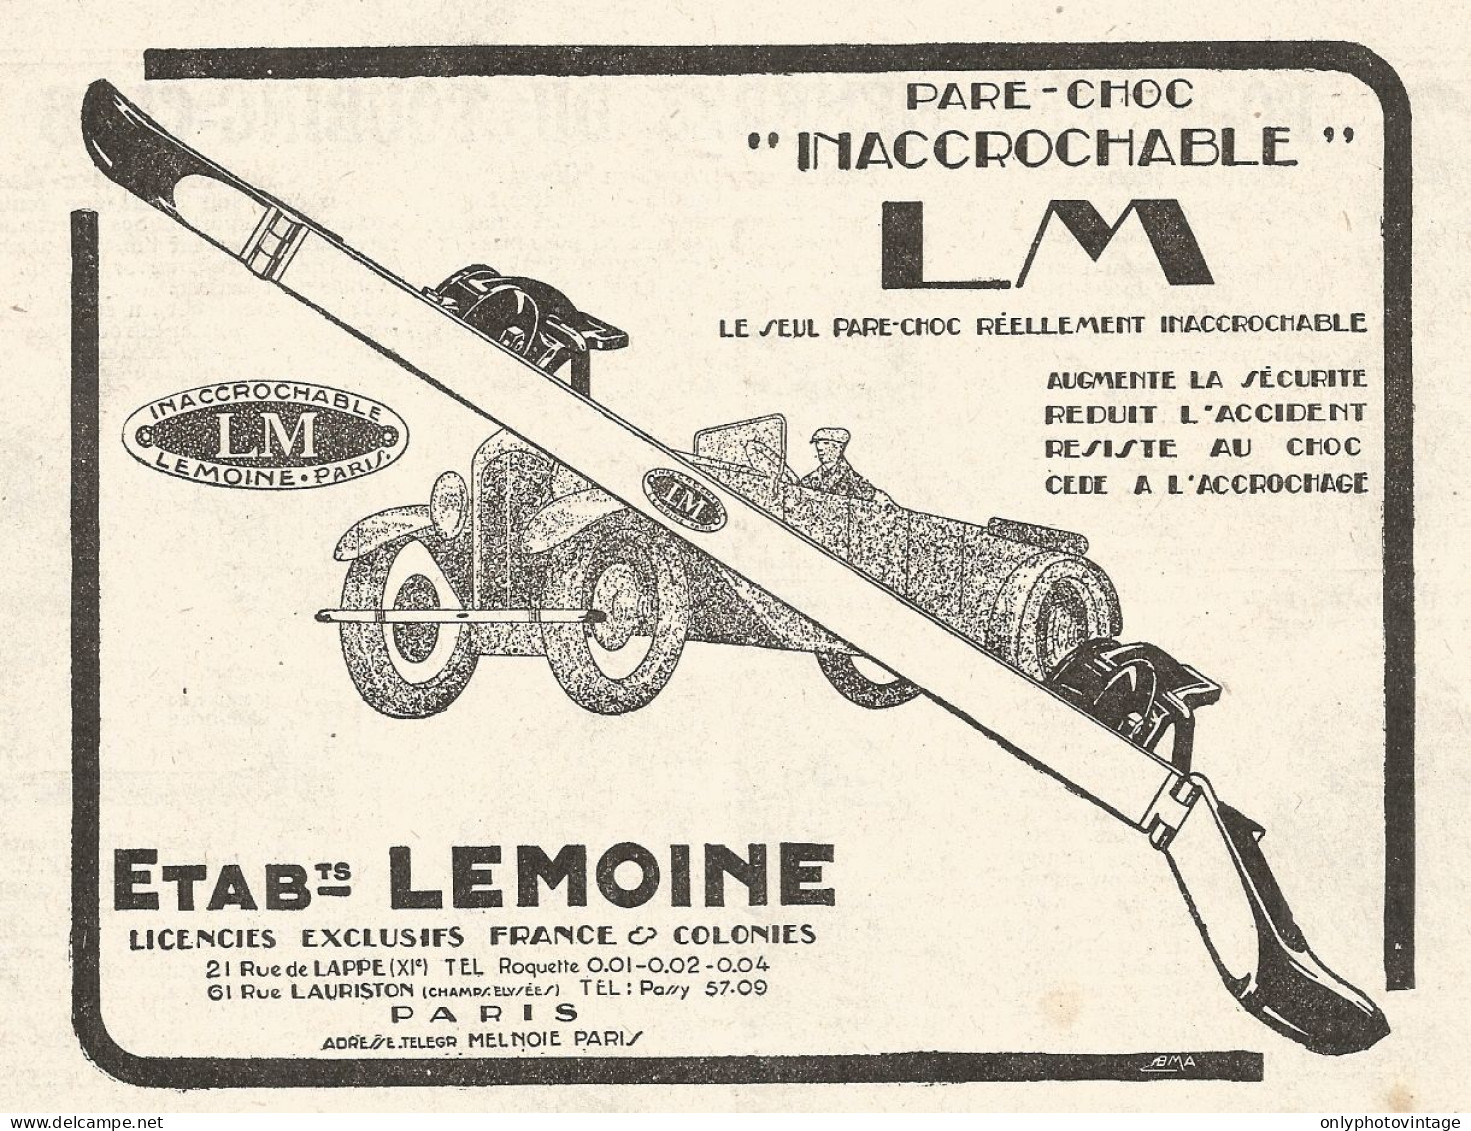 Paraurti LM - Lemoine - Pubblicitï¿½ Del 1926 - Old Advertising - Advertising